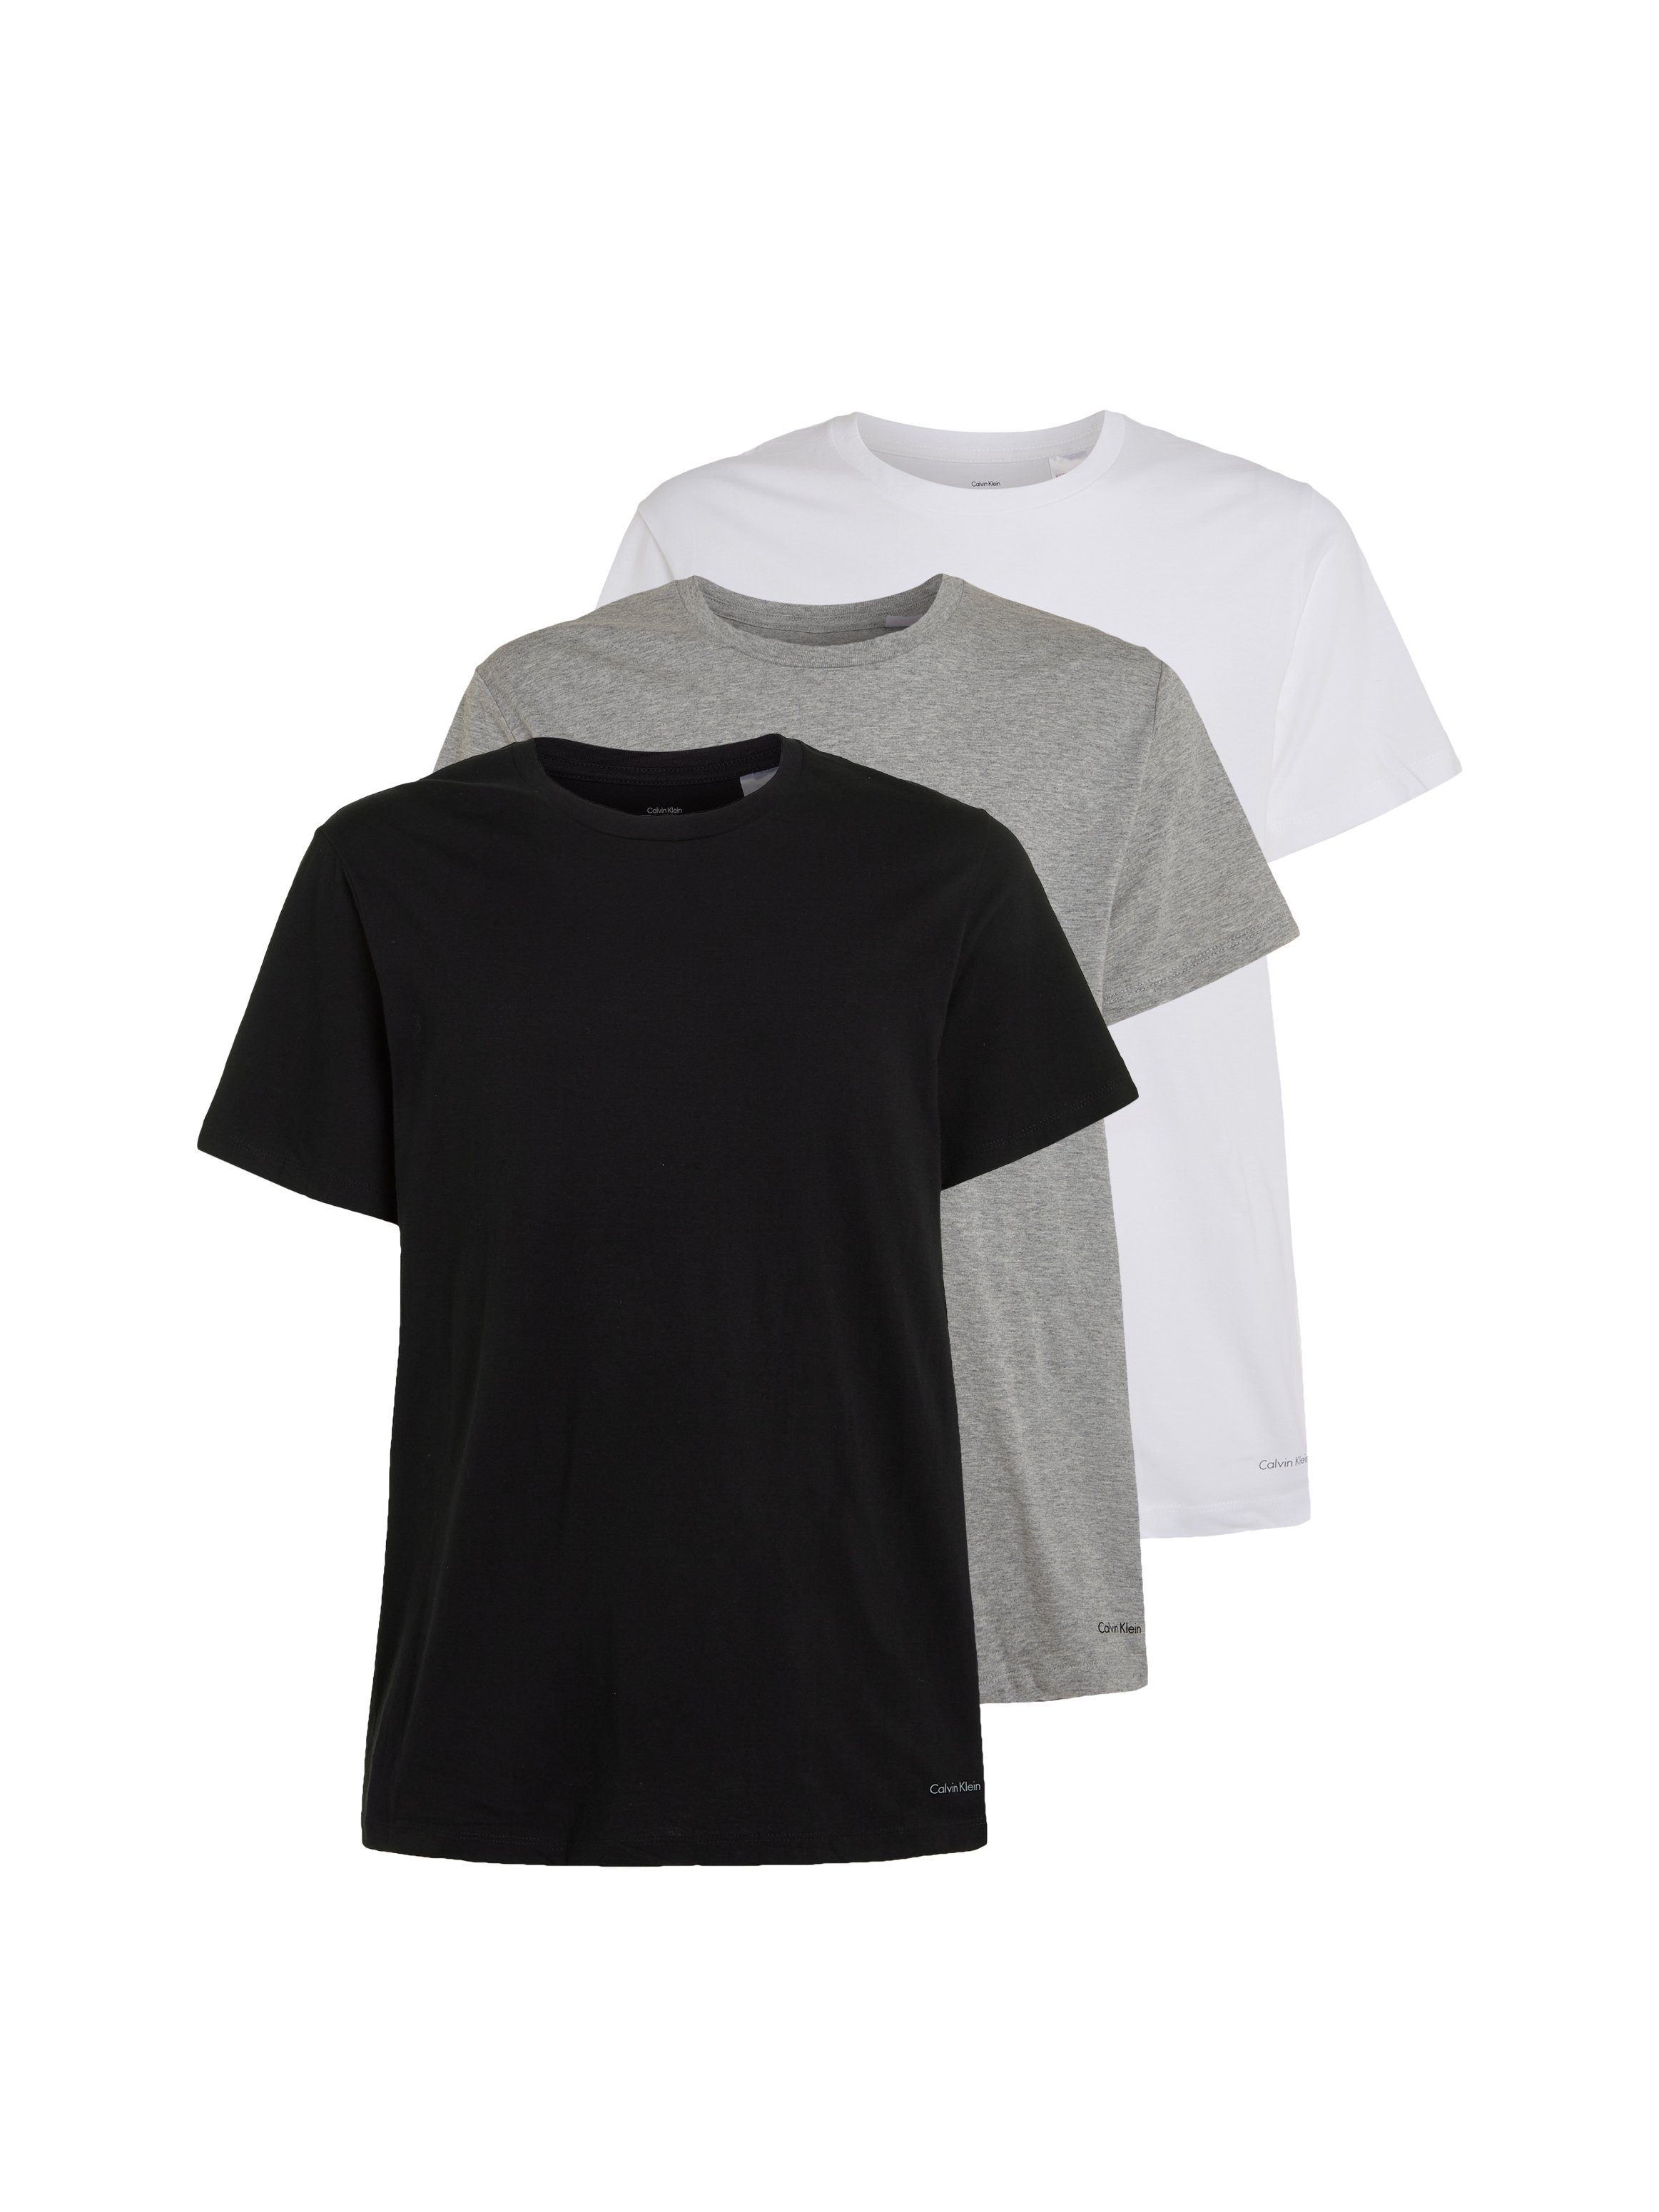 Calvin Klein weiß T-Shirt schwarz, uni (3er-Pack) grau-meliert, Underwear